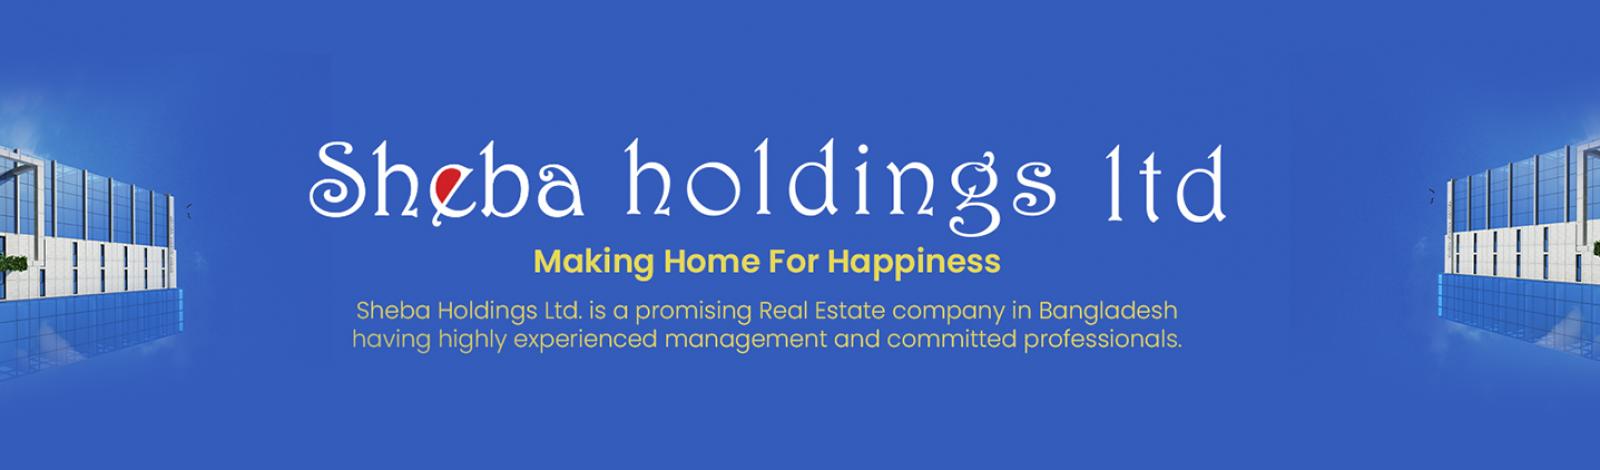 Sheba Holdings Ltd. banner